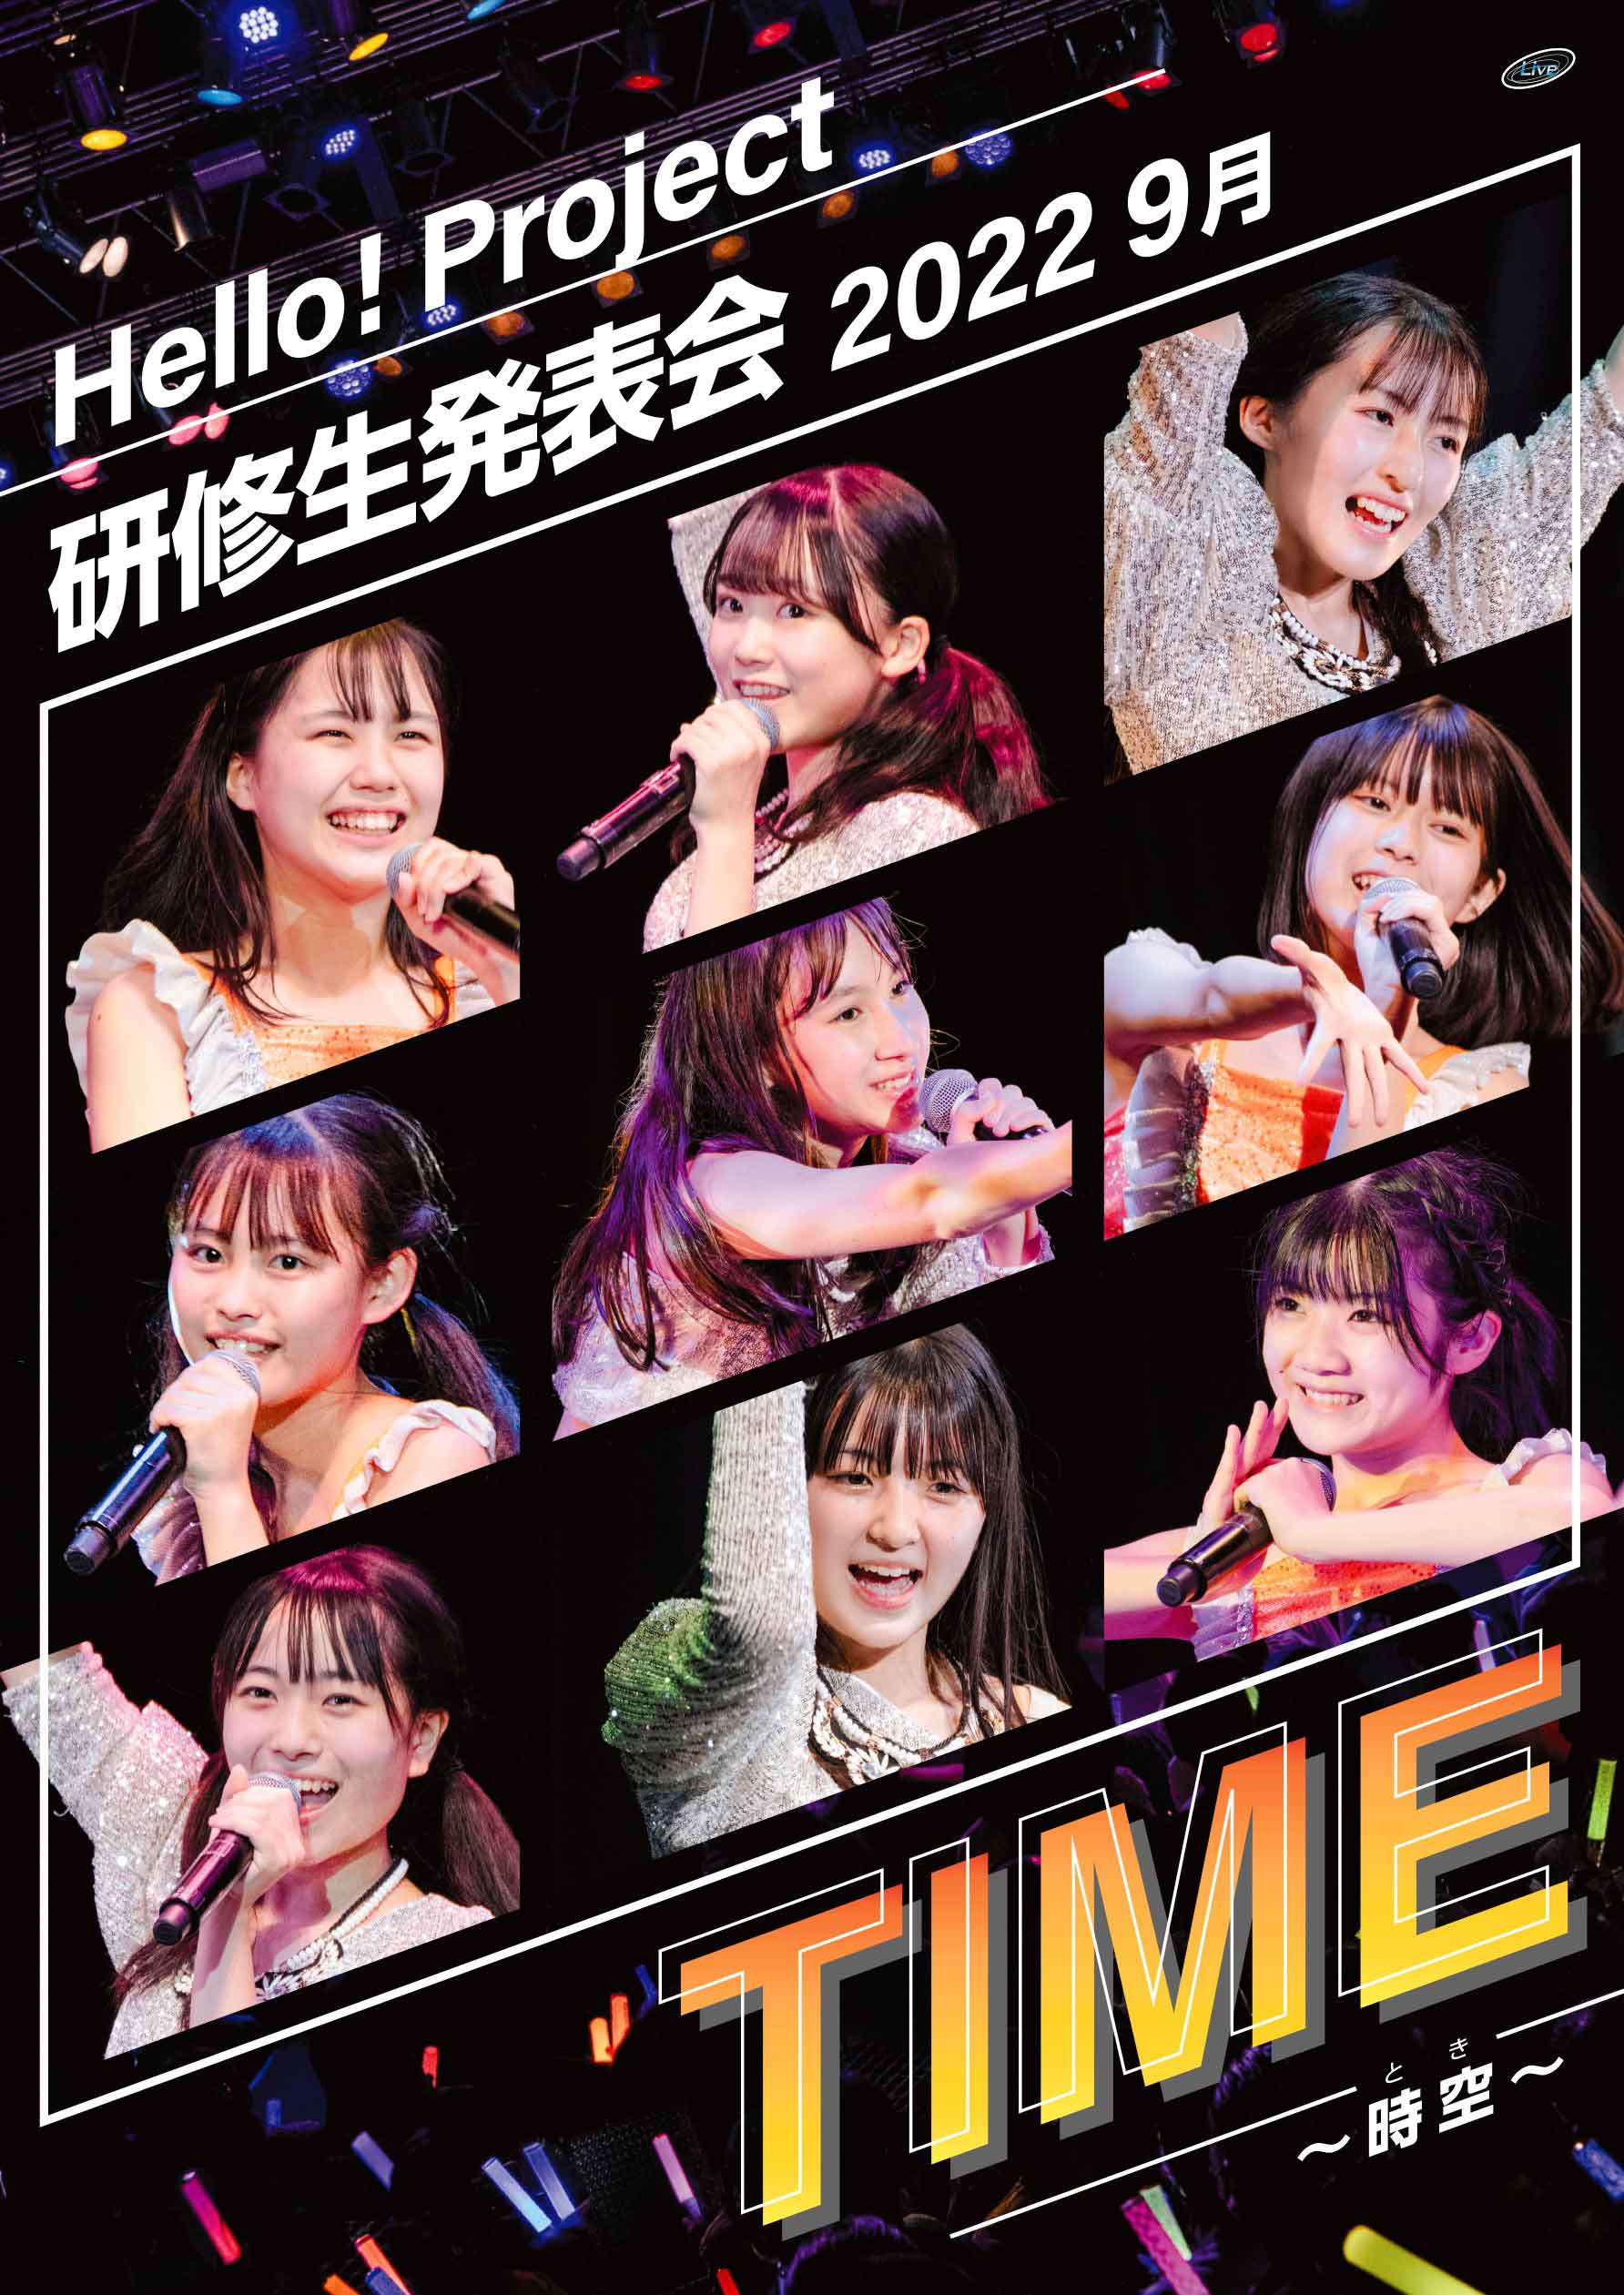 ハロプロ研修生 DVD「Hello! Project 研修生発表会 2022 9月 TIME～時空～」